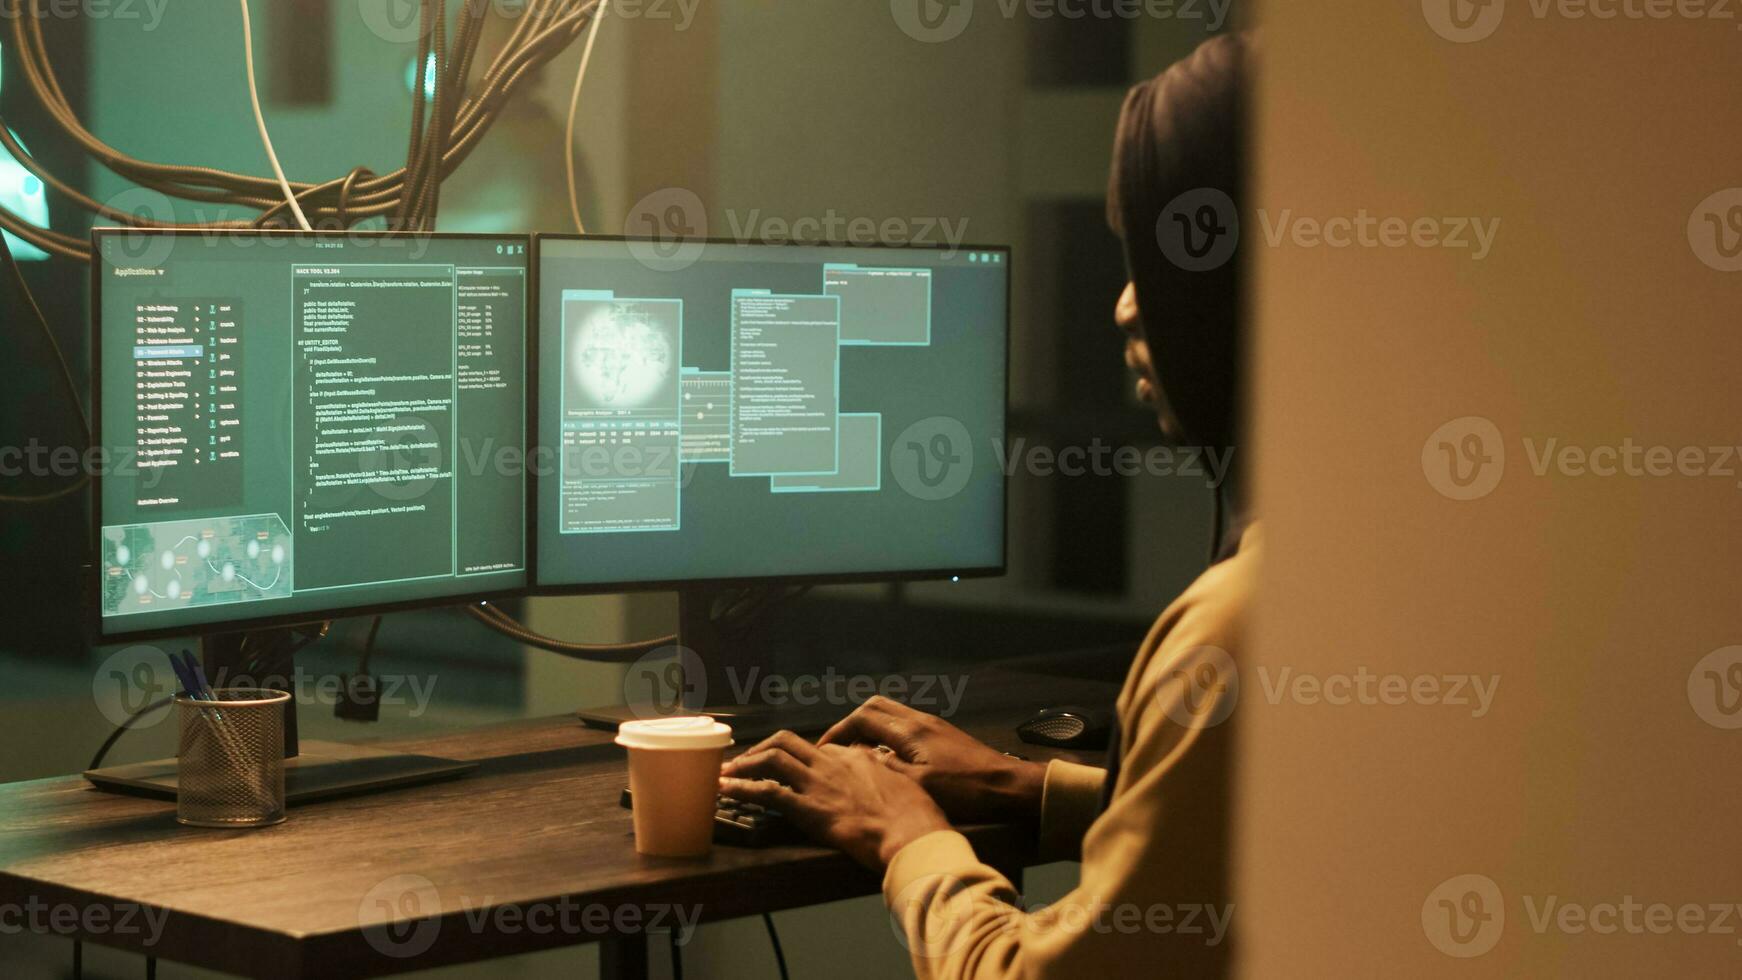 africano americano spiare fare illegale sicurezza violazione a notte, Lavorando su cyber bullismo per rompere computer firewall. maschio ladro pirateria sistema con virus crittografia, fabbricazione minacce. foto